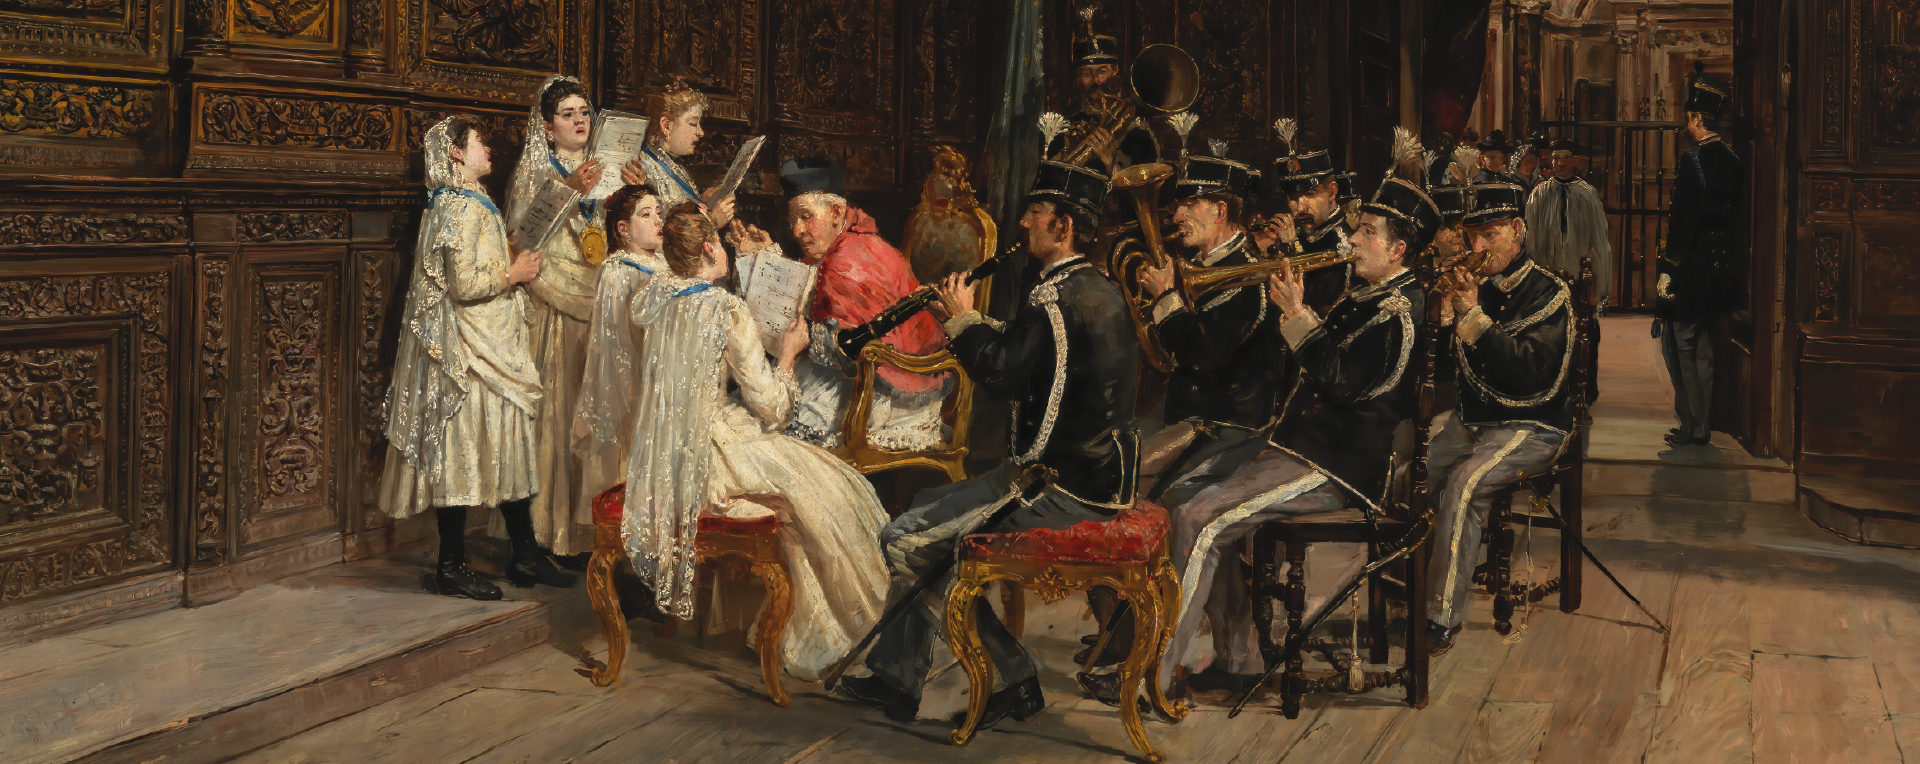 Domenico Battaglia, Prima della processione (Prova della musica prima della processione), 1890 ca